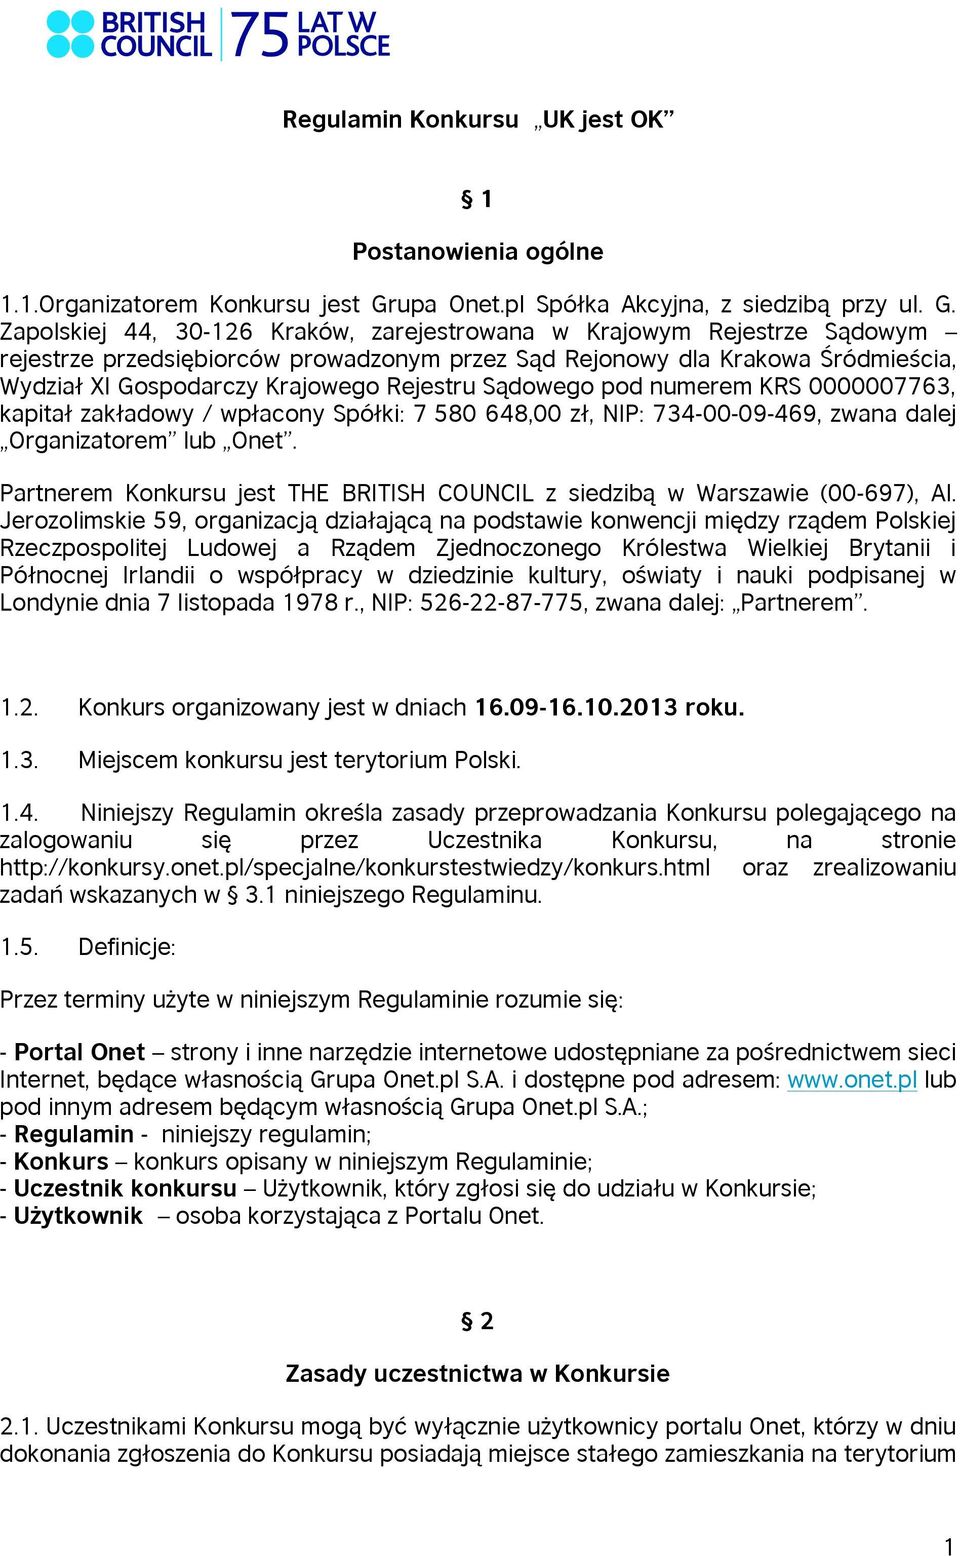 Zapolskiej 44, 30-126 Kraków, zarejestrowana w Krajowym Rejestrze Sądowym rejestrze przedsiębiorców prowadzonym przez Sąd Rejonowy dla Krakowa Śródmieścia, Wydział XI Gospodarczy Krajowego Rejestru